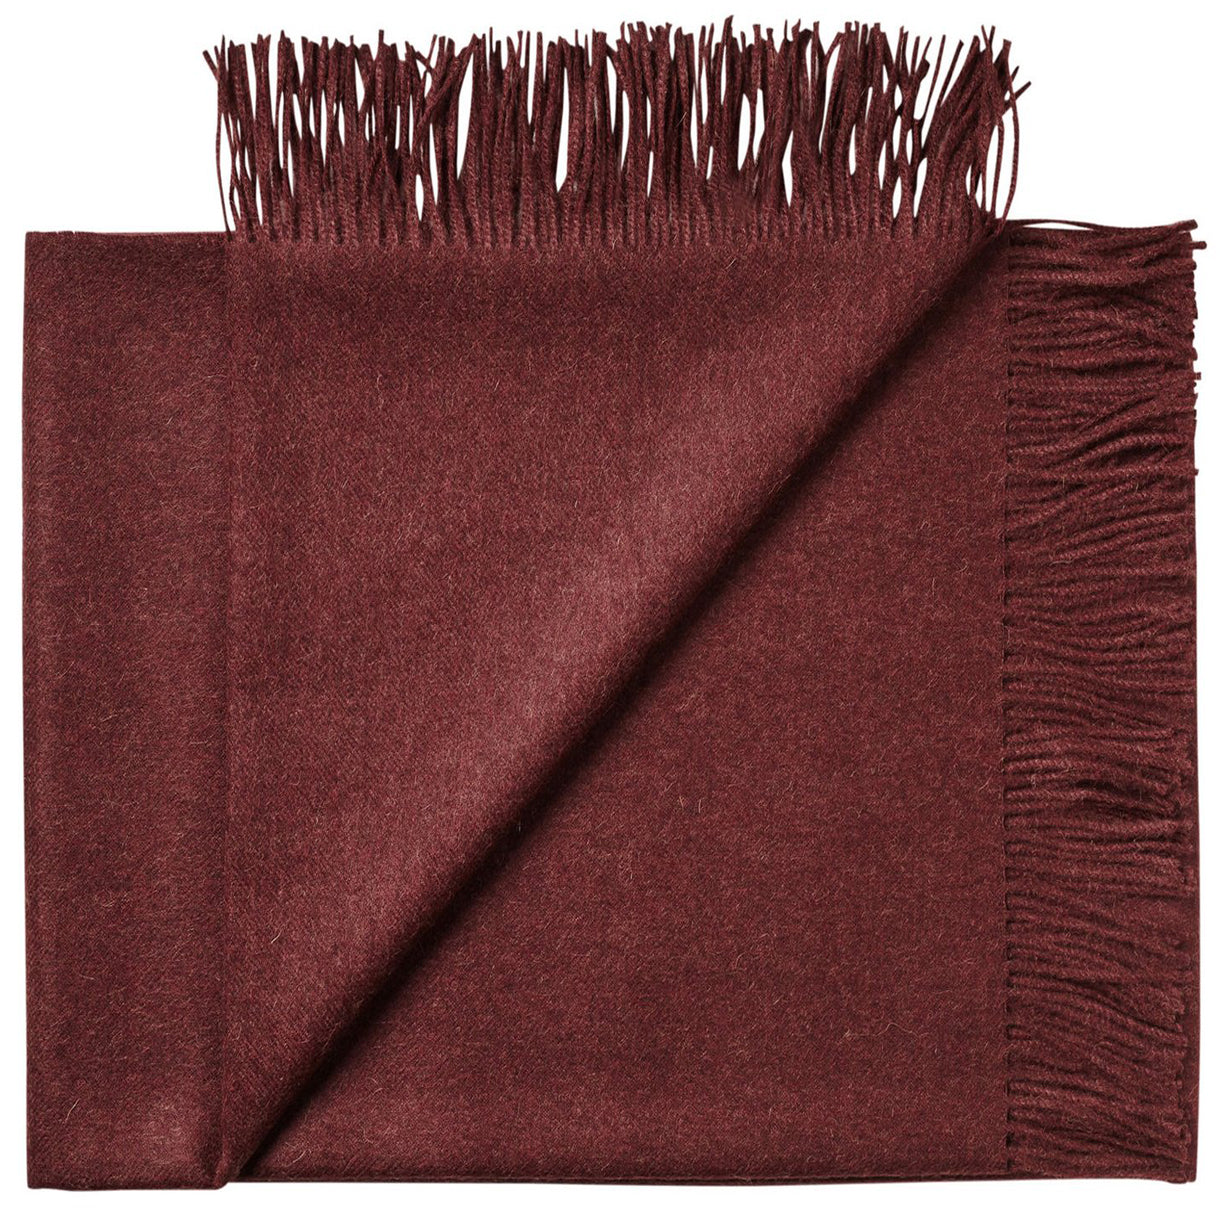 Soft Alpaca Wool Throw Blanket Bordeaux Red